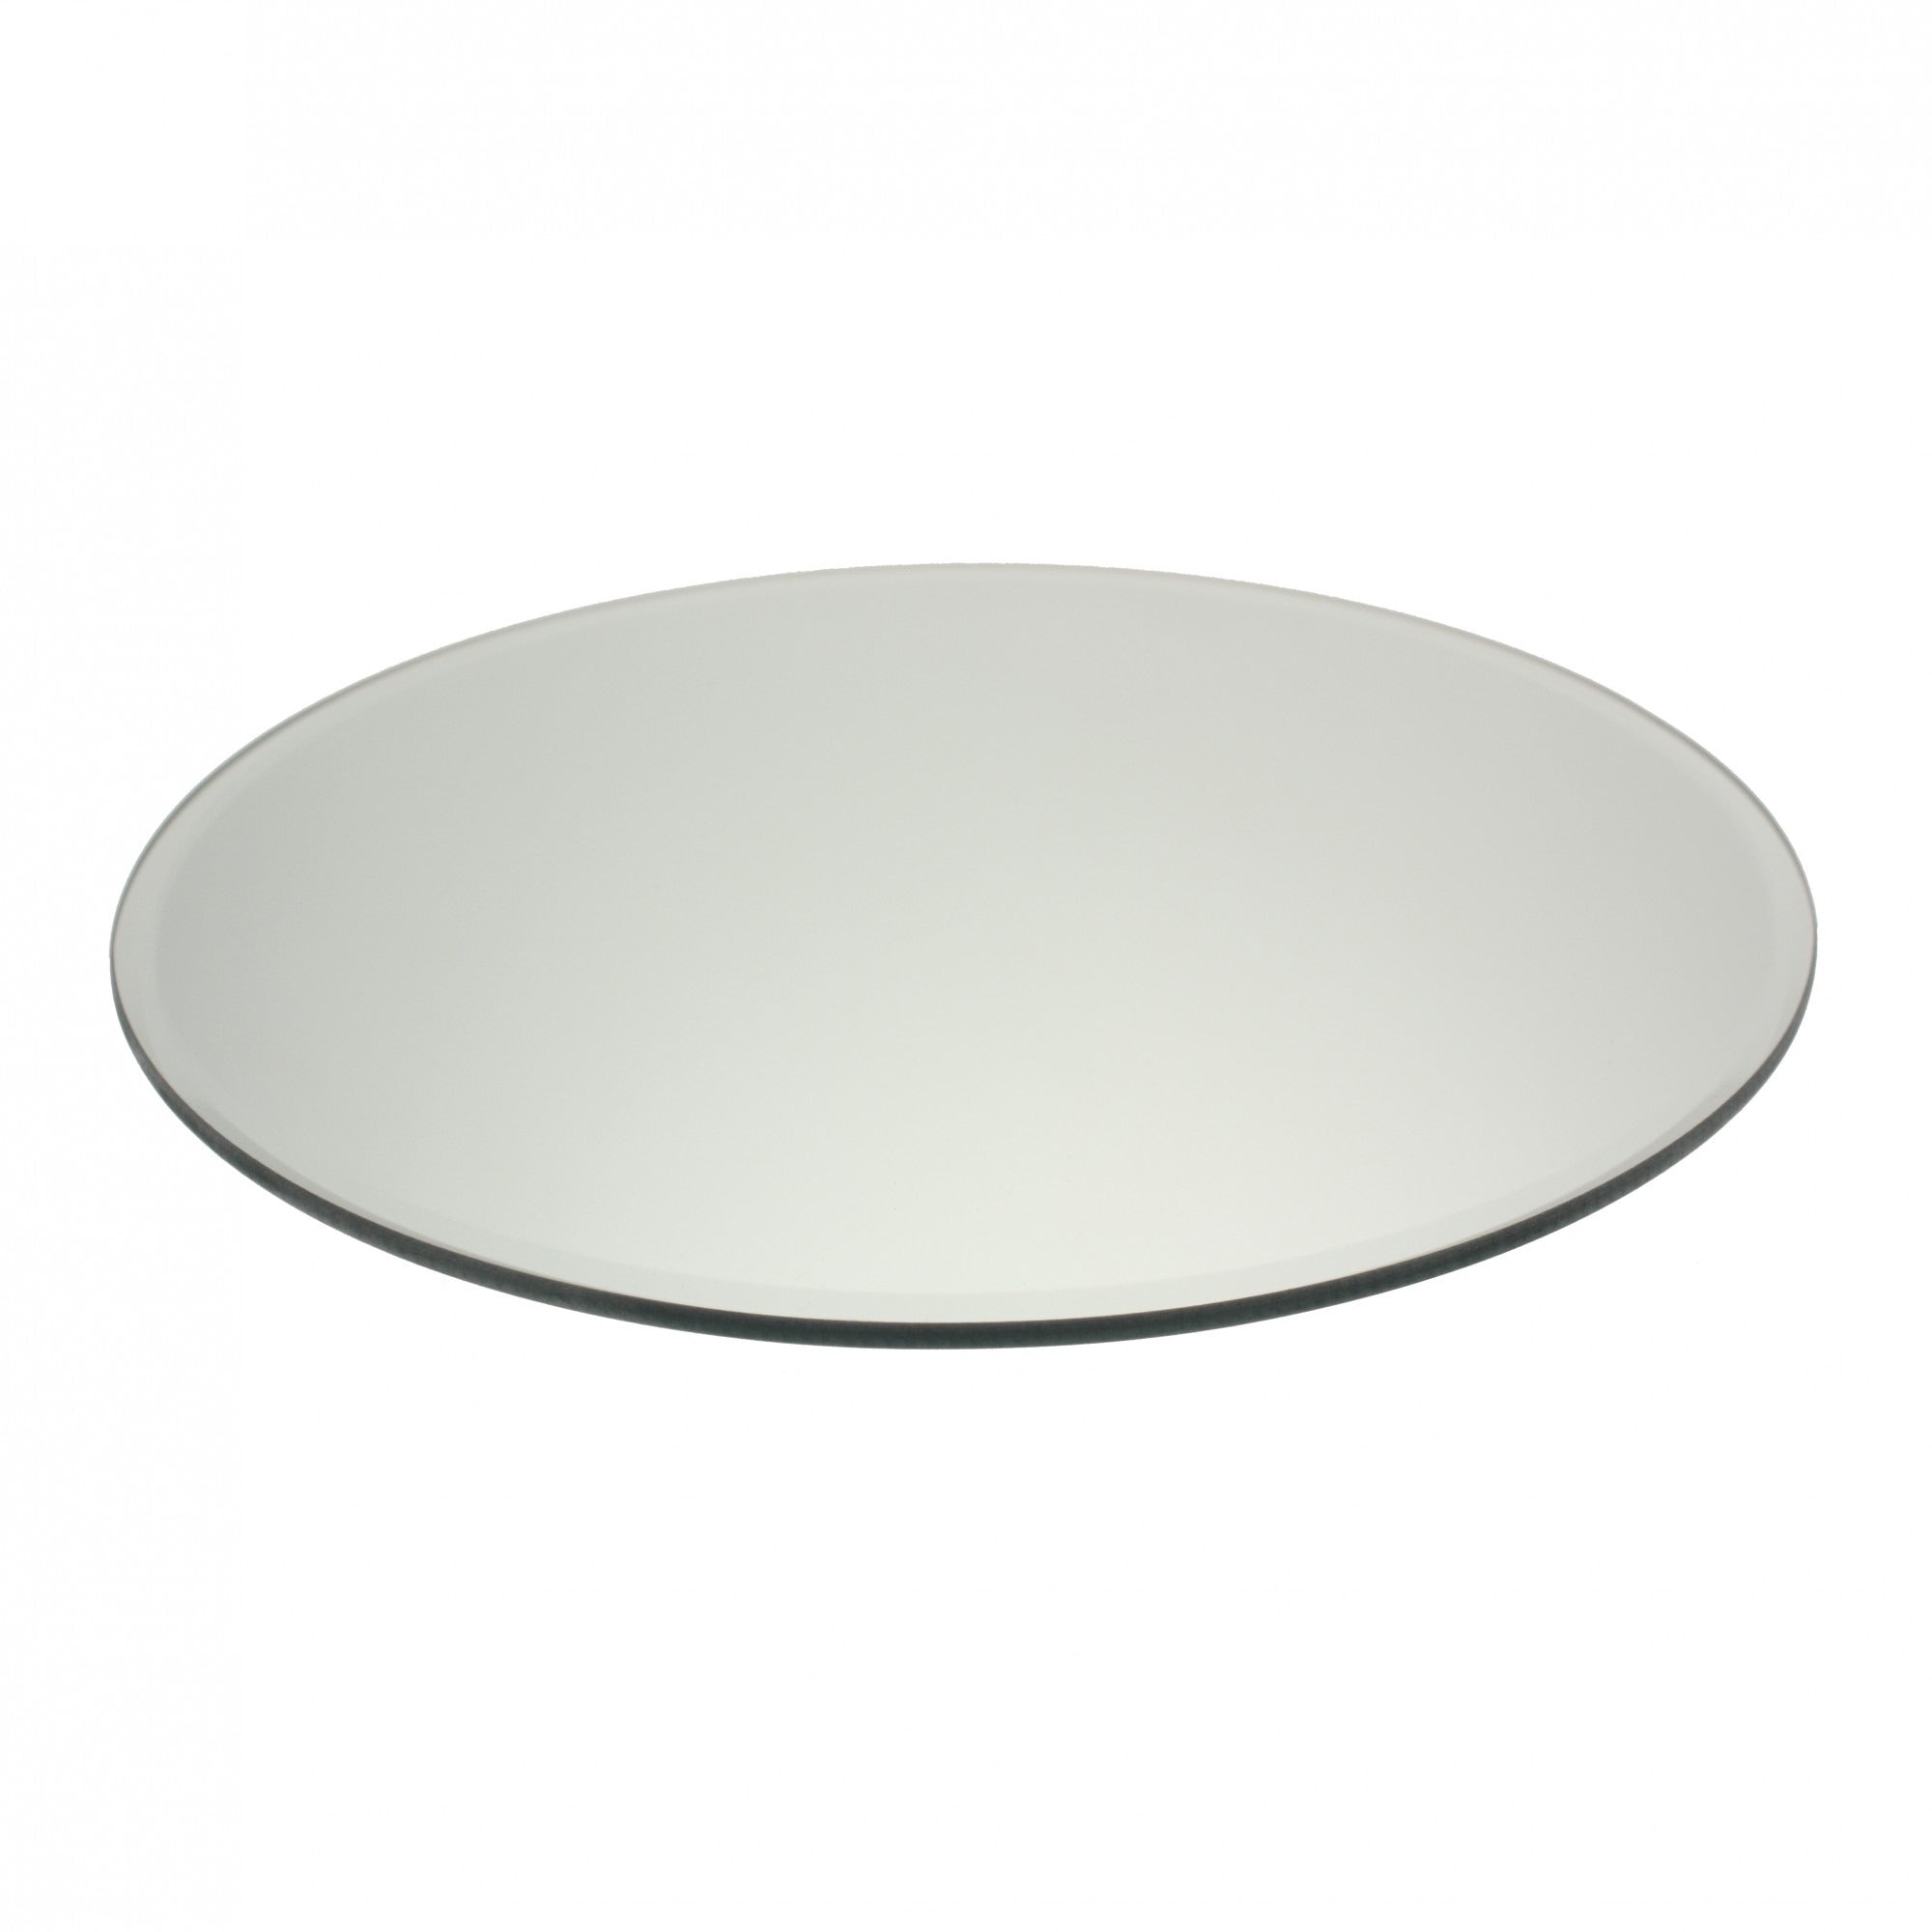 Round Mirror Plate 25cm